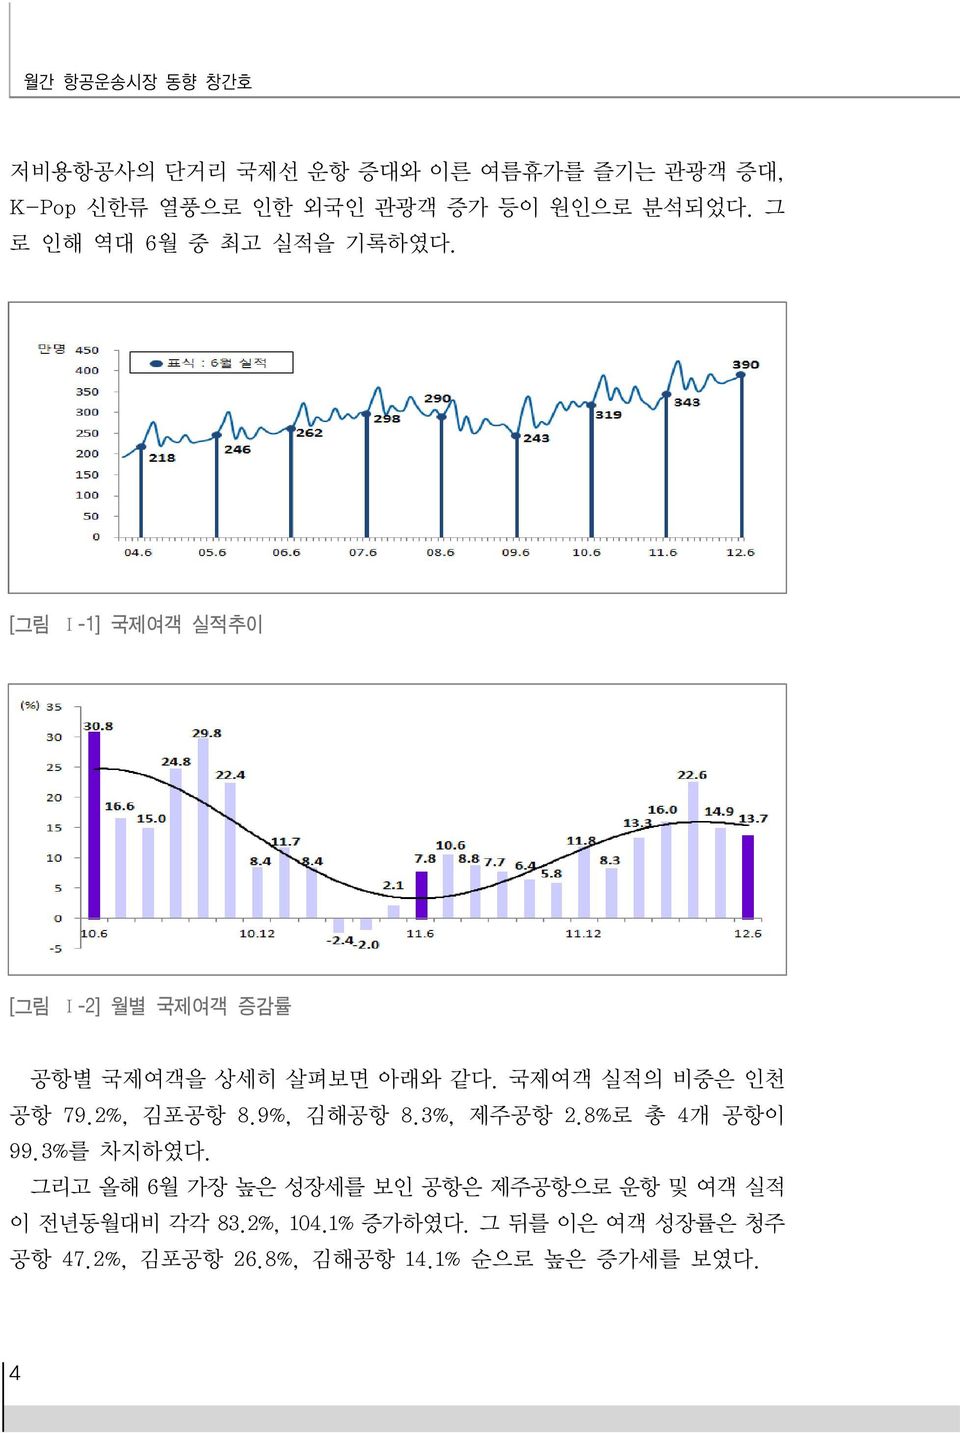 국제여객 실적의 비중은 인천 공항 79.2%, 김포공항 8.9%, 김해공항 8.3%, 제주공항 2.8%로 총 4개 공항이 99.3%를 차지하였다.